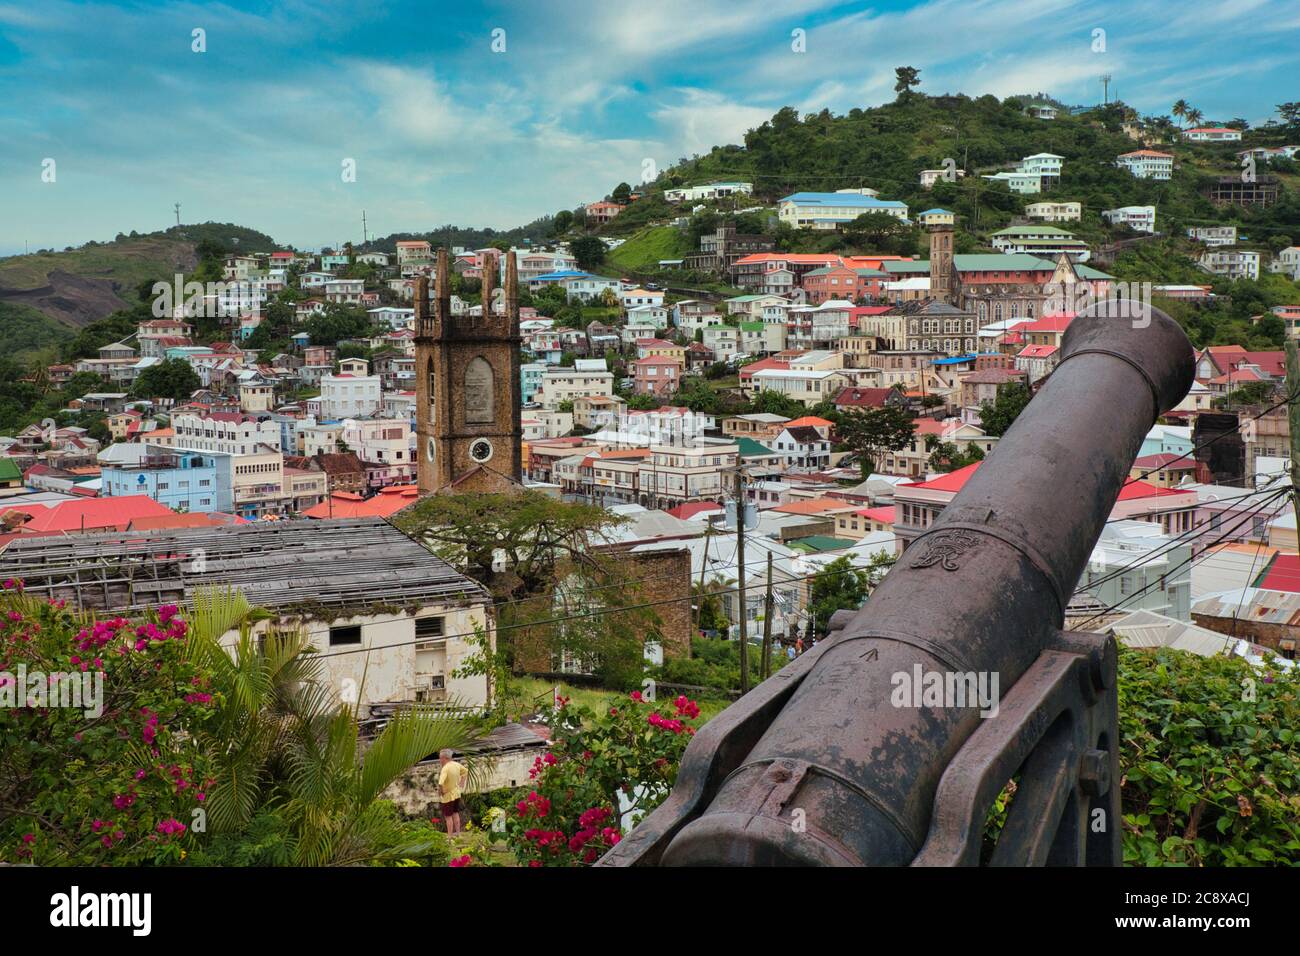 Blick auf St. George's von Fort St. George und Kanonen mit Häusern auf den Hügeln dahinter, Grenada Insel, die Karibik Stockfoto